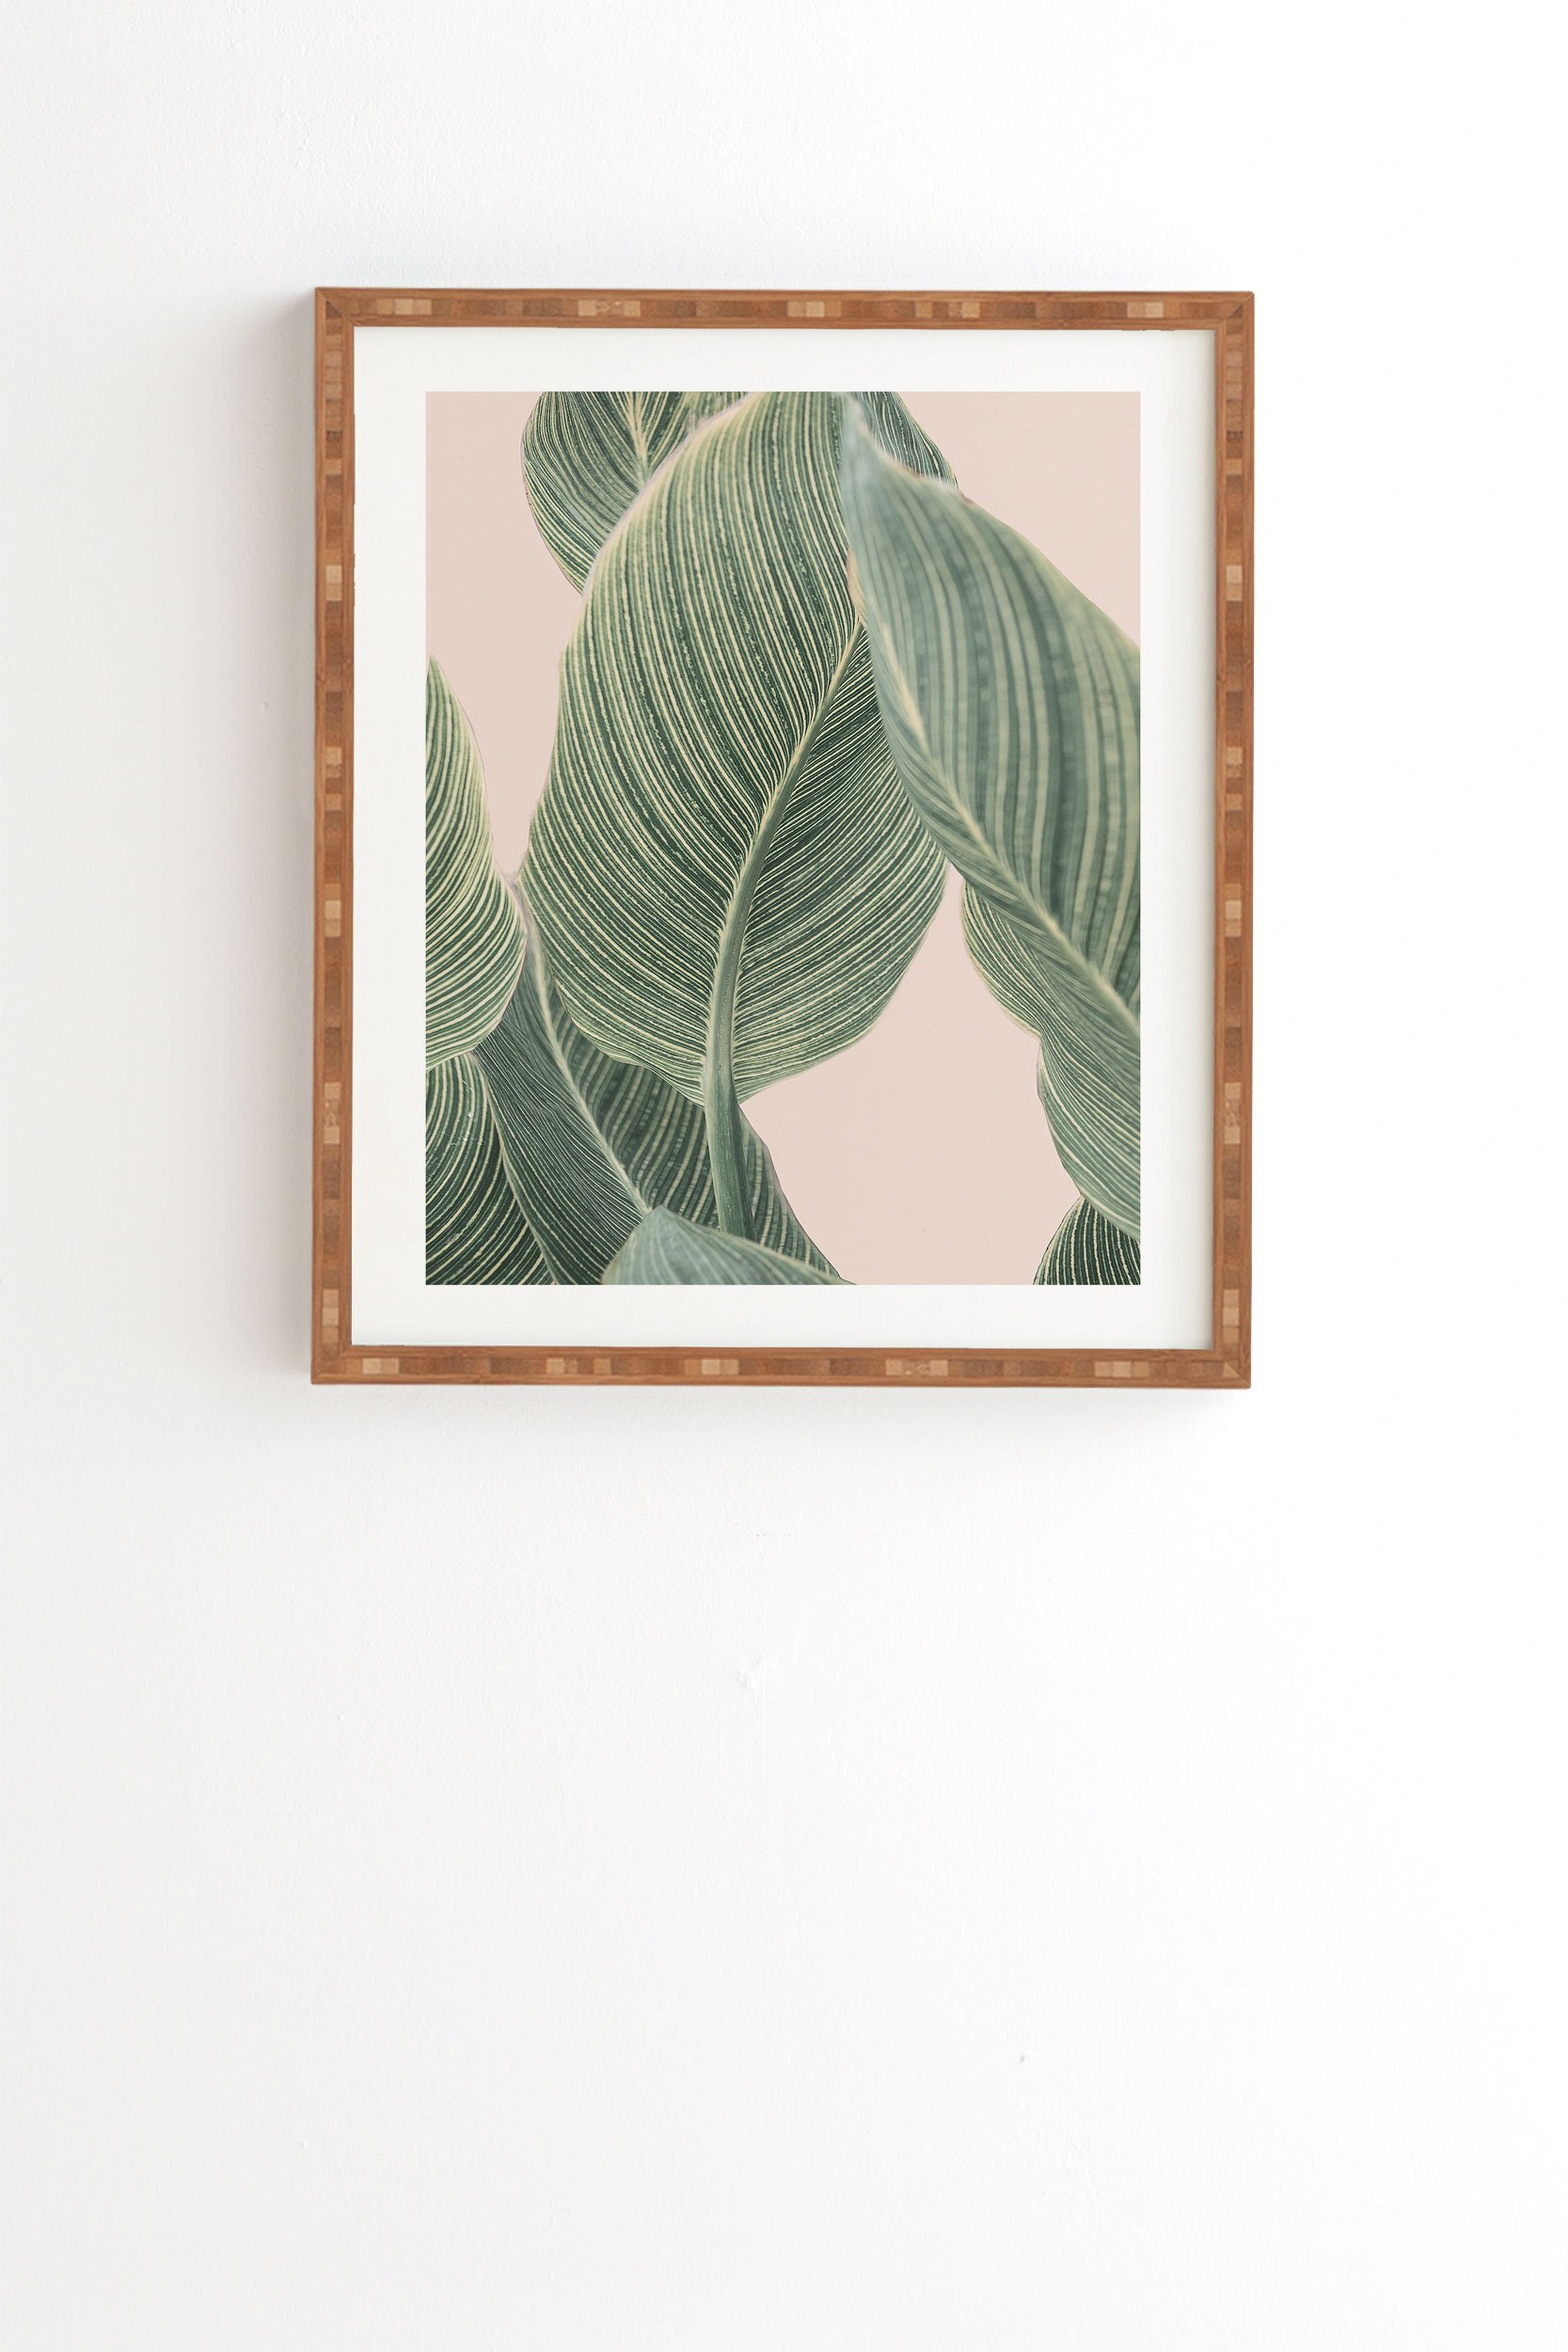 Calah by Sisi and Seb - Framed Wall Art Bamboo 19" x 22.4" - Wander Print Co.